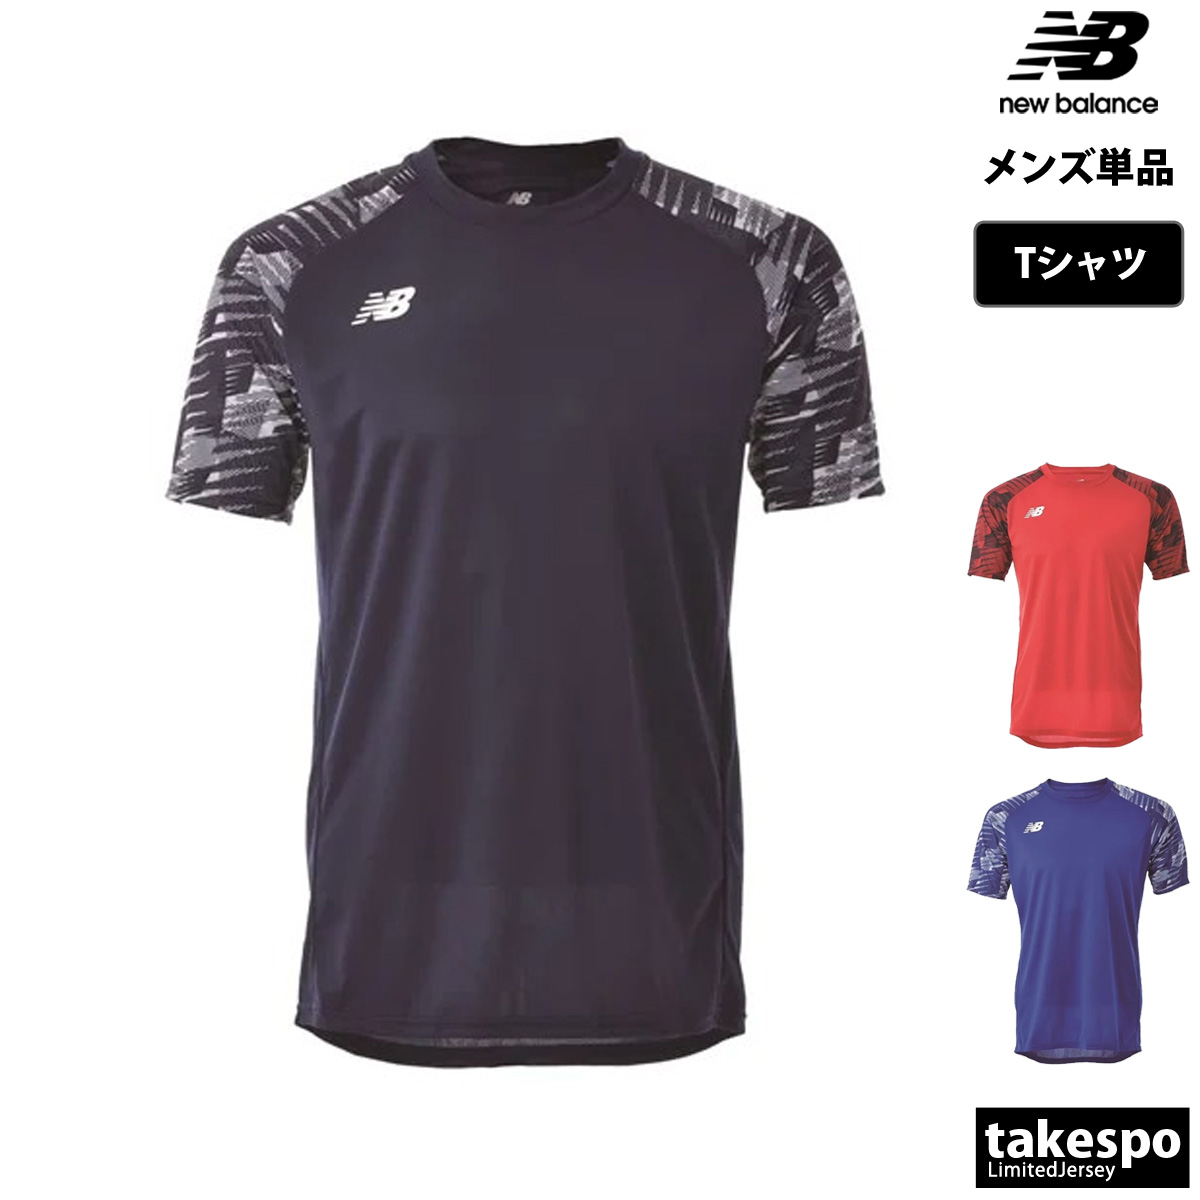 ニューバランス Tシャツ メンズ 上 newbalance サッカー フットボール ゲームシャツ フットサル JMTF1417 送料無料 新作